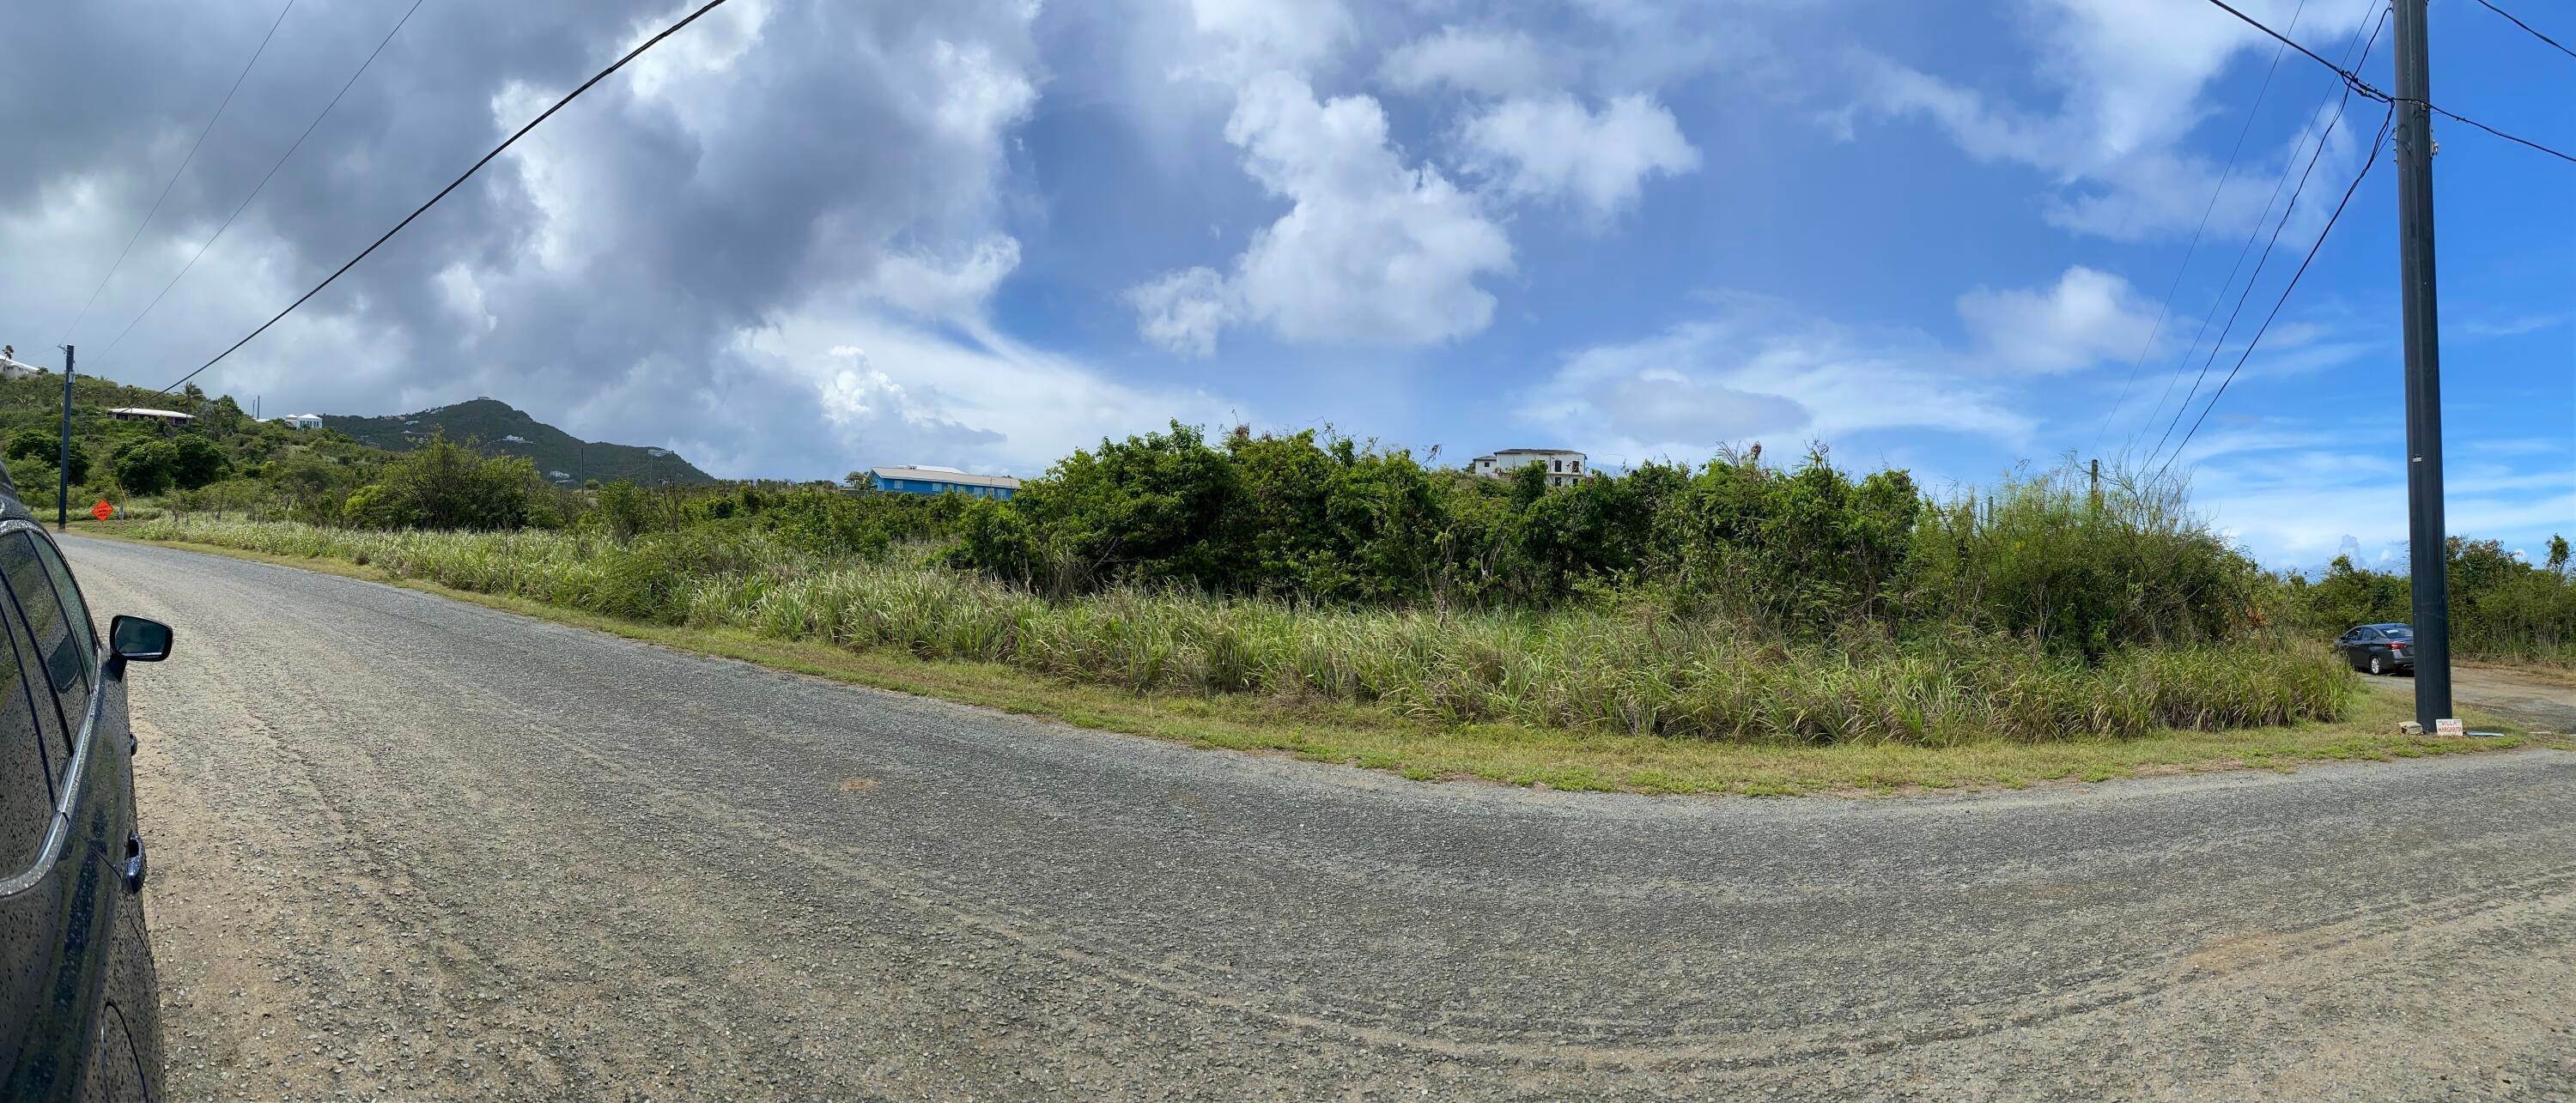 6. Land for Sale at 30 Salt River NB St Croix, Virgin Islands 00820 United States Virgin Islands